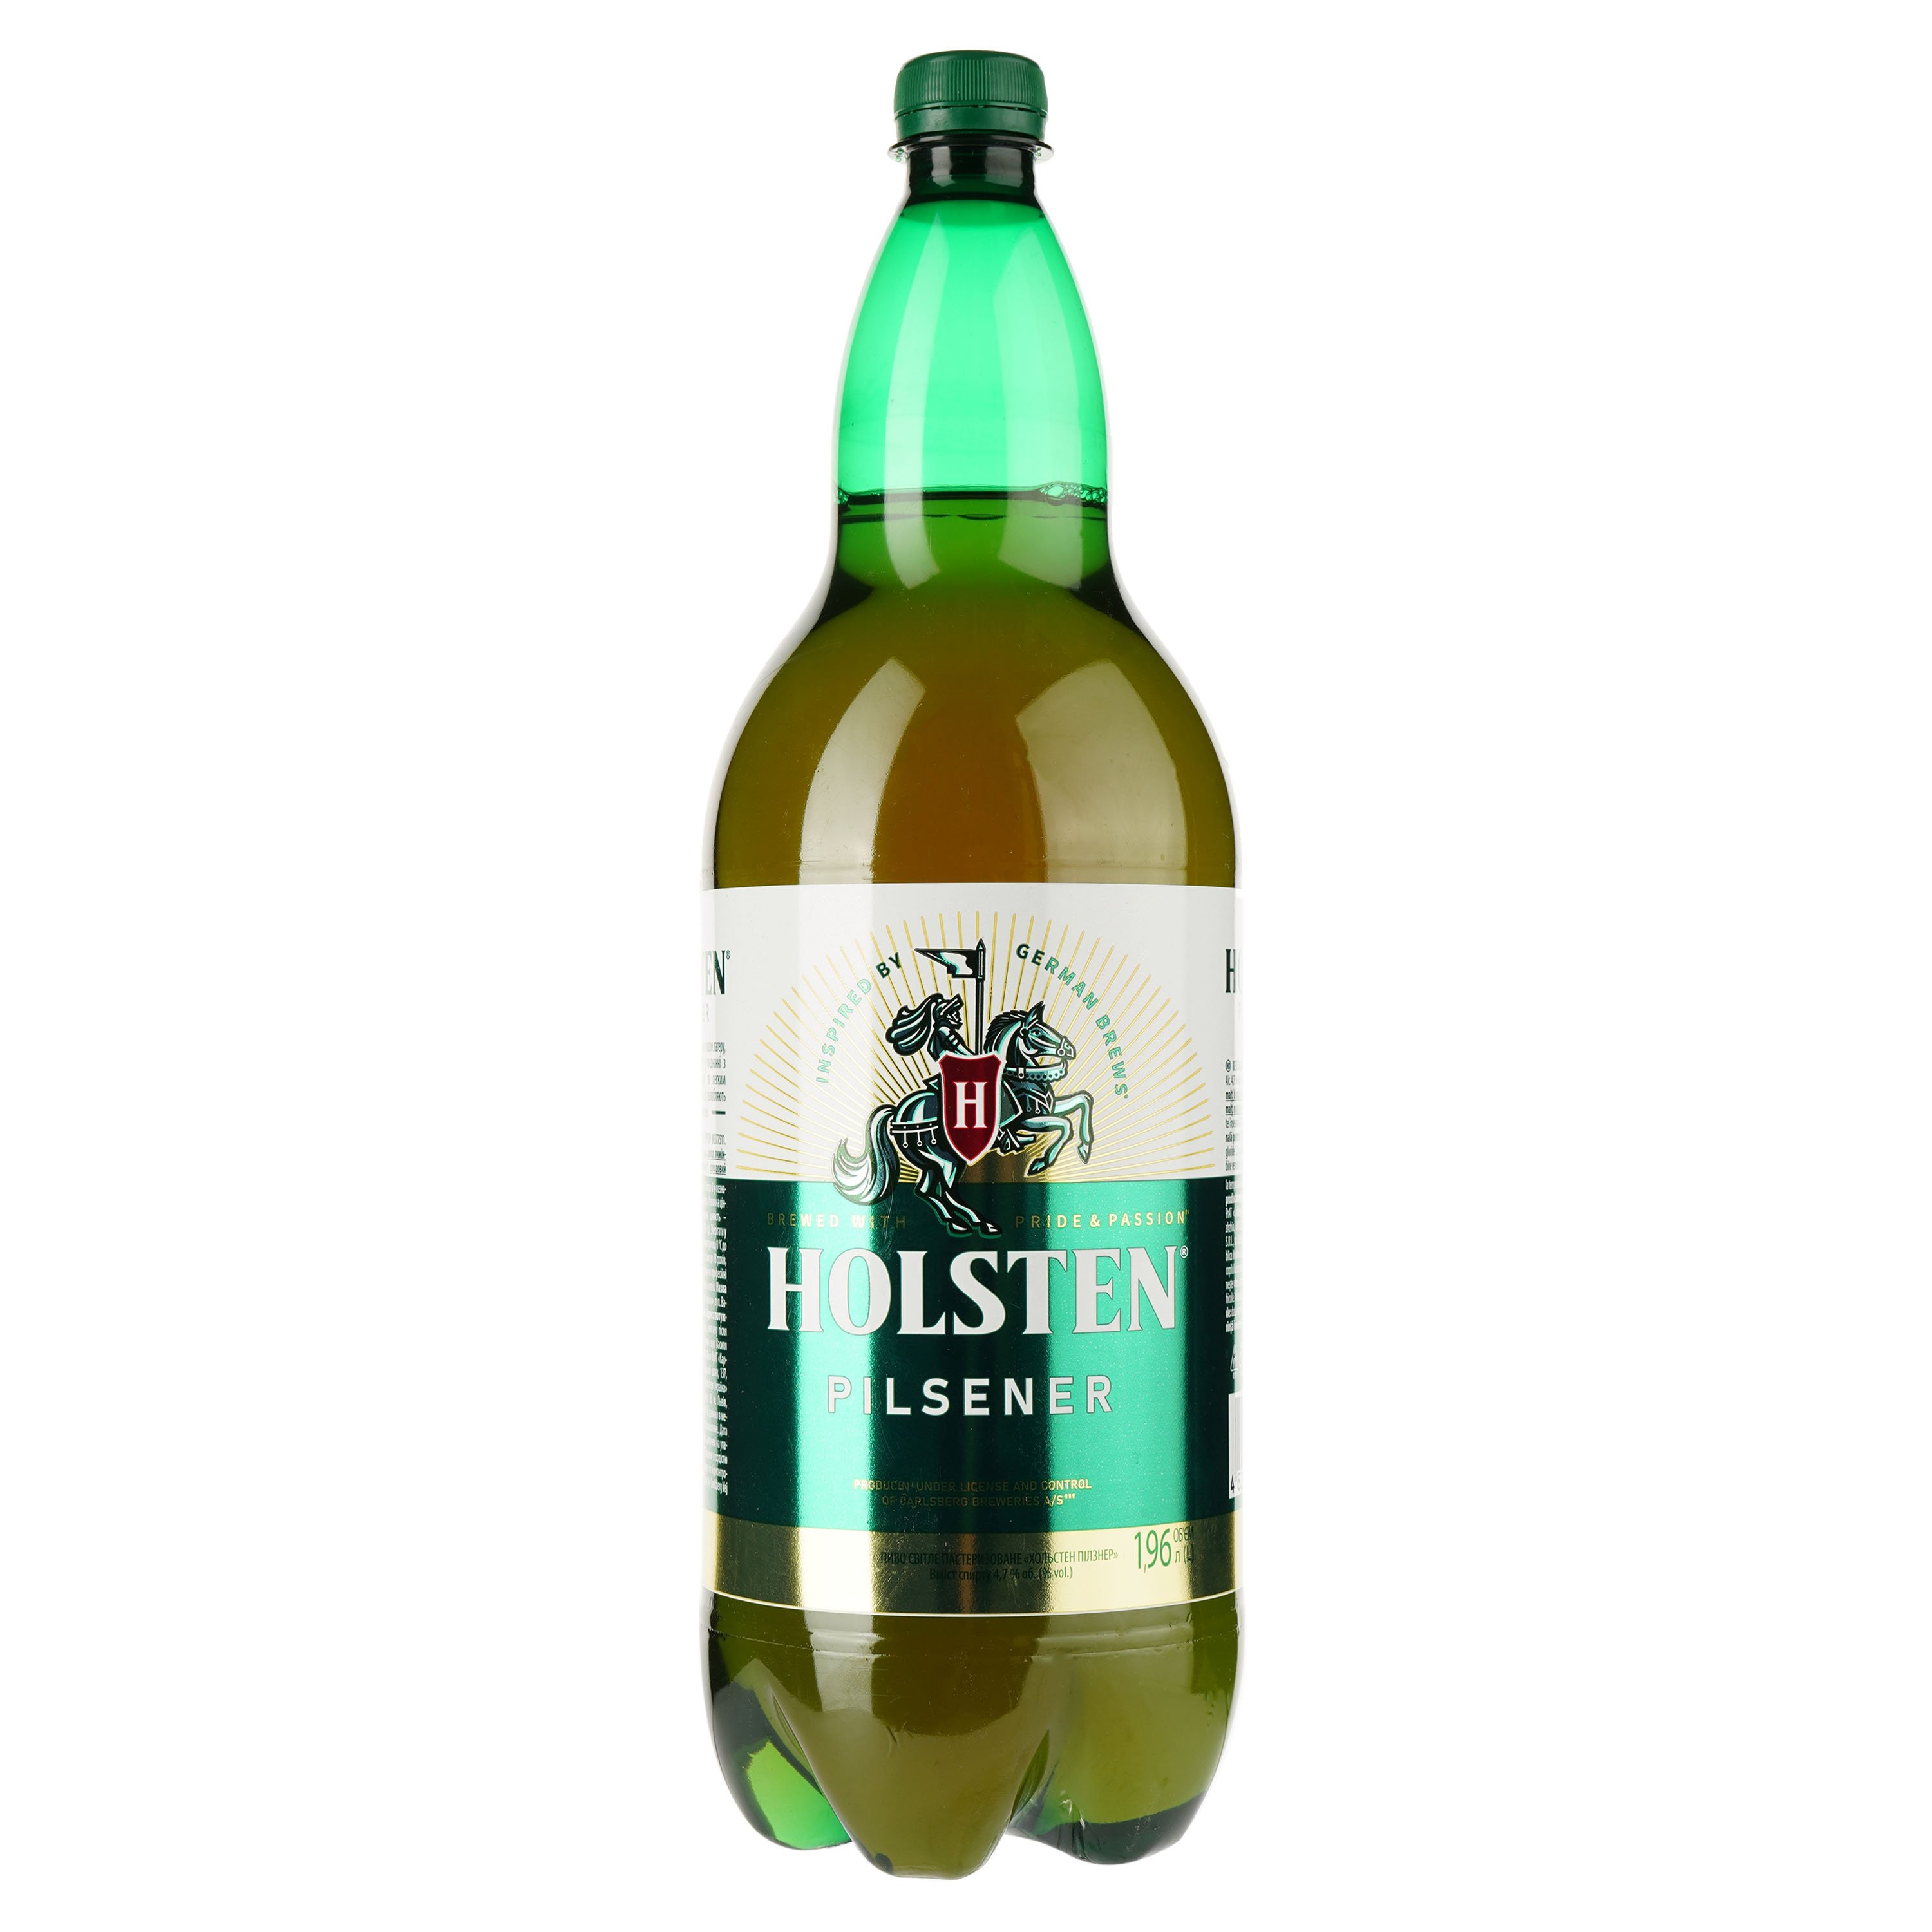 Пиво Holsten Pilsener, світле, 4,7%, 1,96 л (909344) - фото 1